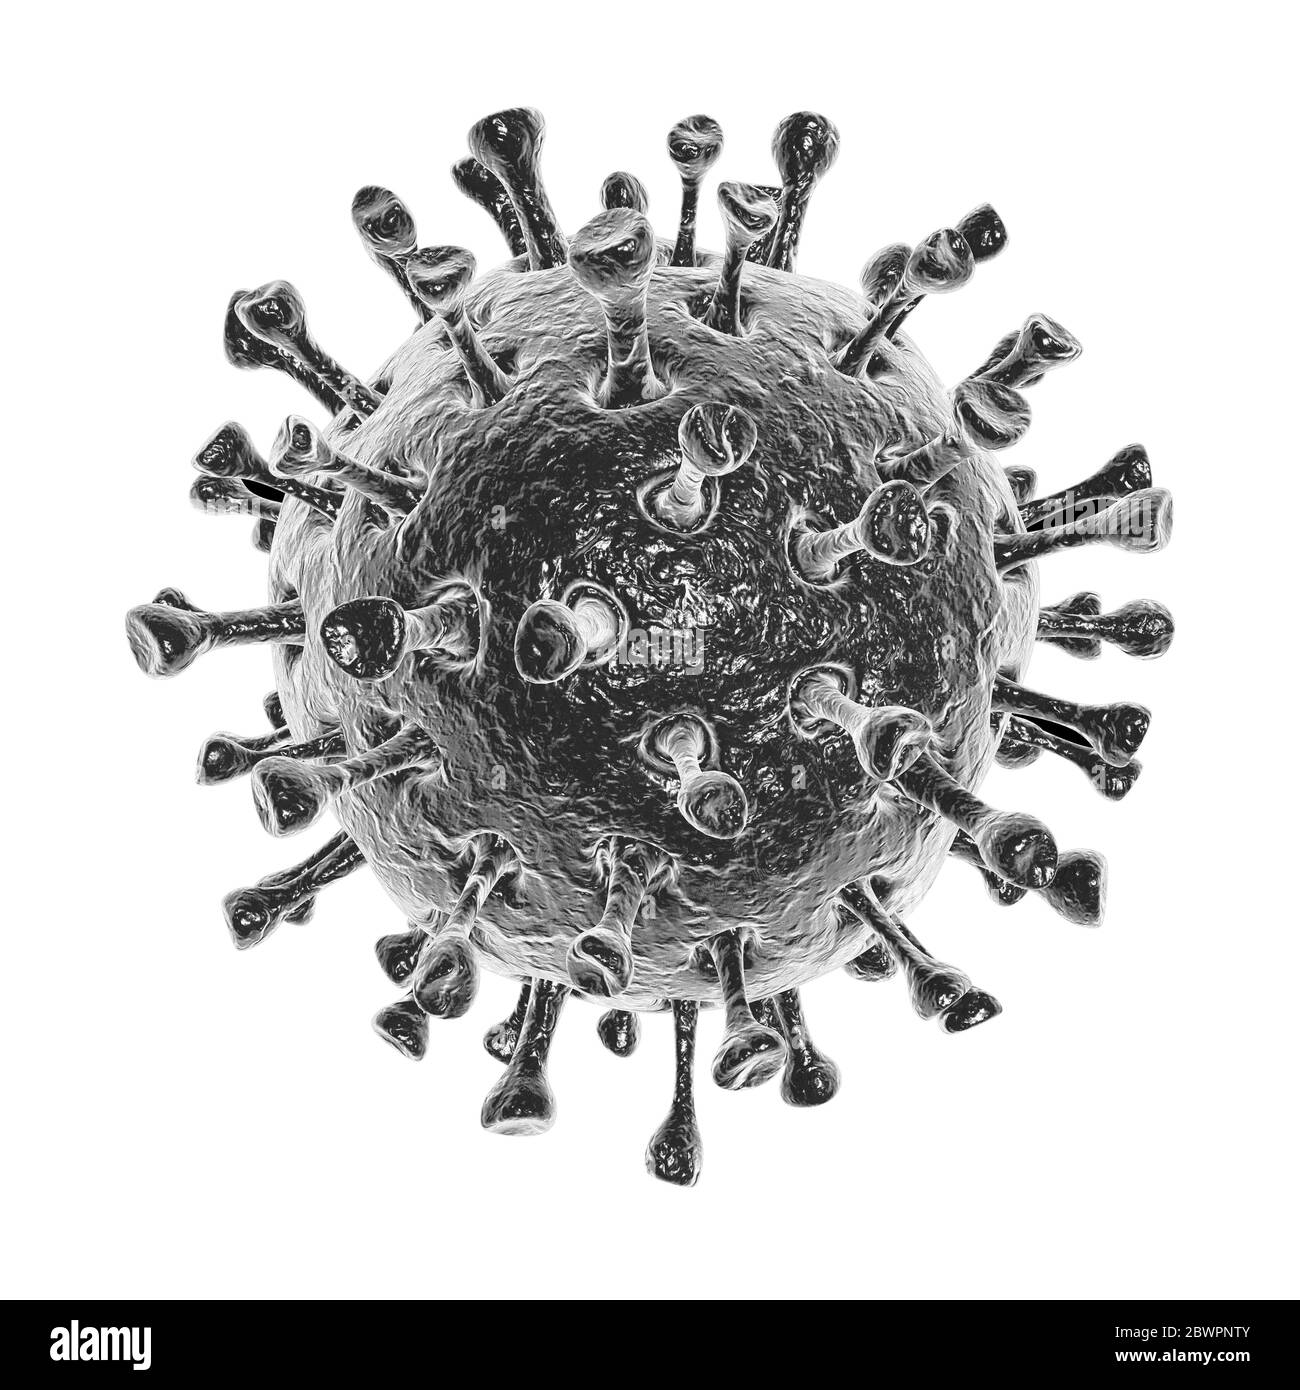 2019 NCoV-Corona Virus-Zellausbruch und Coronaviren Influenza weißer Hintergrund Konzept gefährliche Grippe Schuss Covid -19 Pandemie medizinische Gesundheit Risiko wi Stockfoto